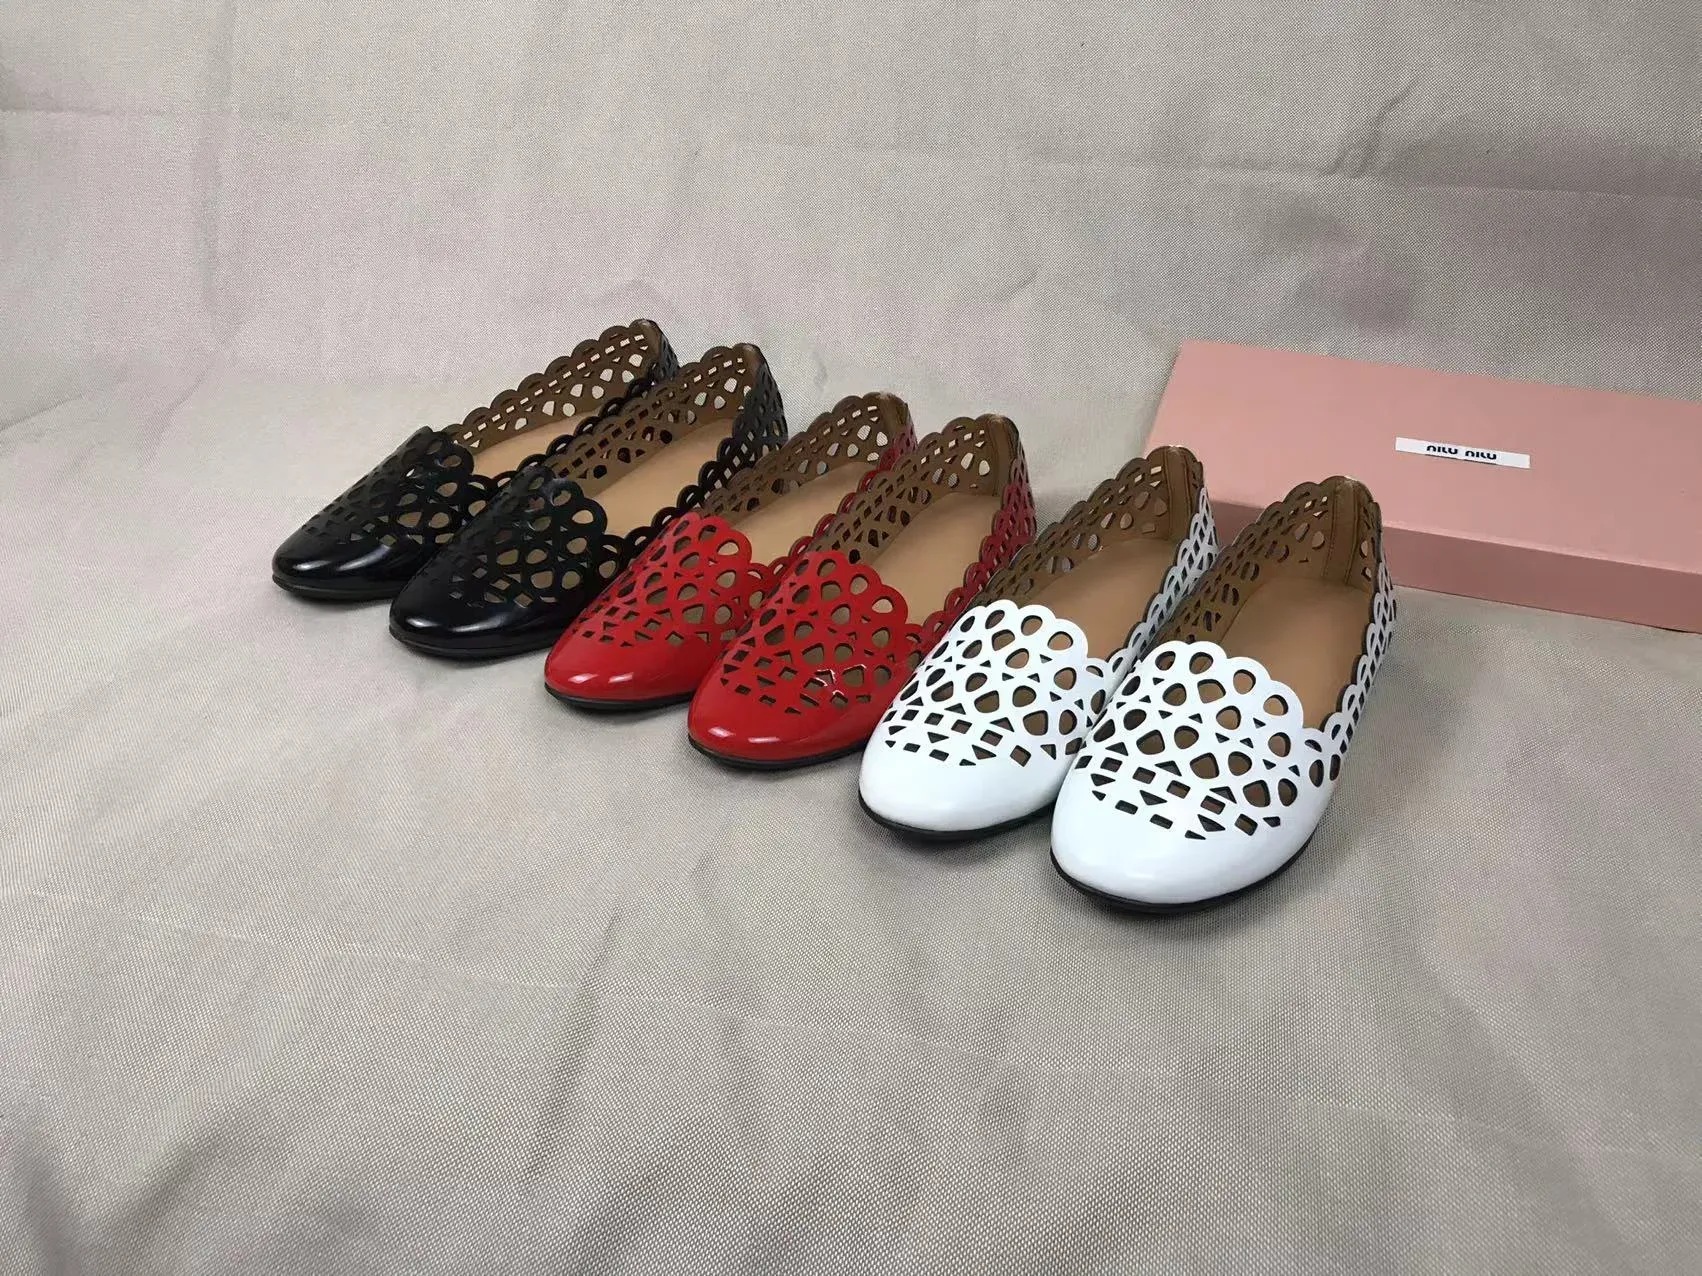 Designer de luxe chaussures miumi pour femmes chaussures en cuir chaussures ventilées avec perforations chaussures d'embarquement pour femmes cuirs véritables rouges chaussures de vol noires avec boîte